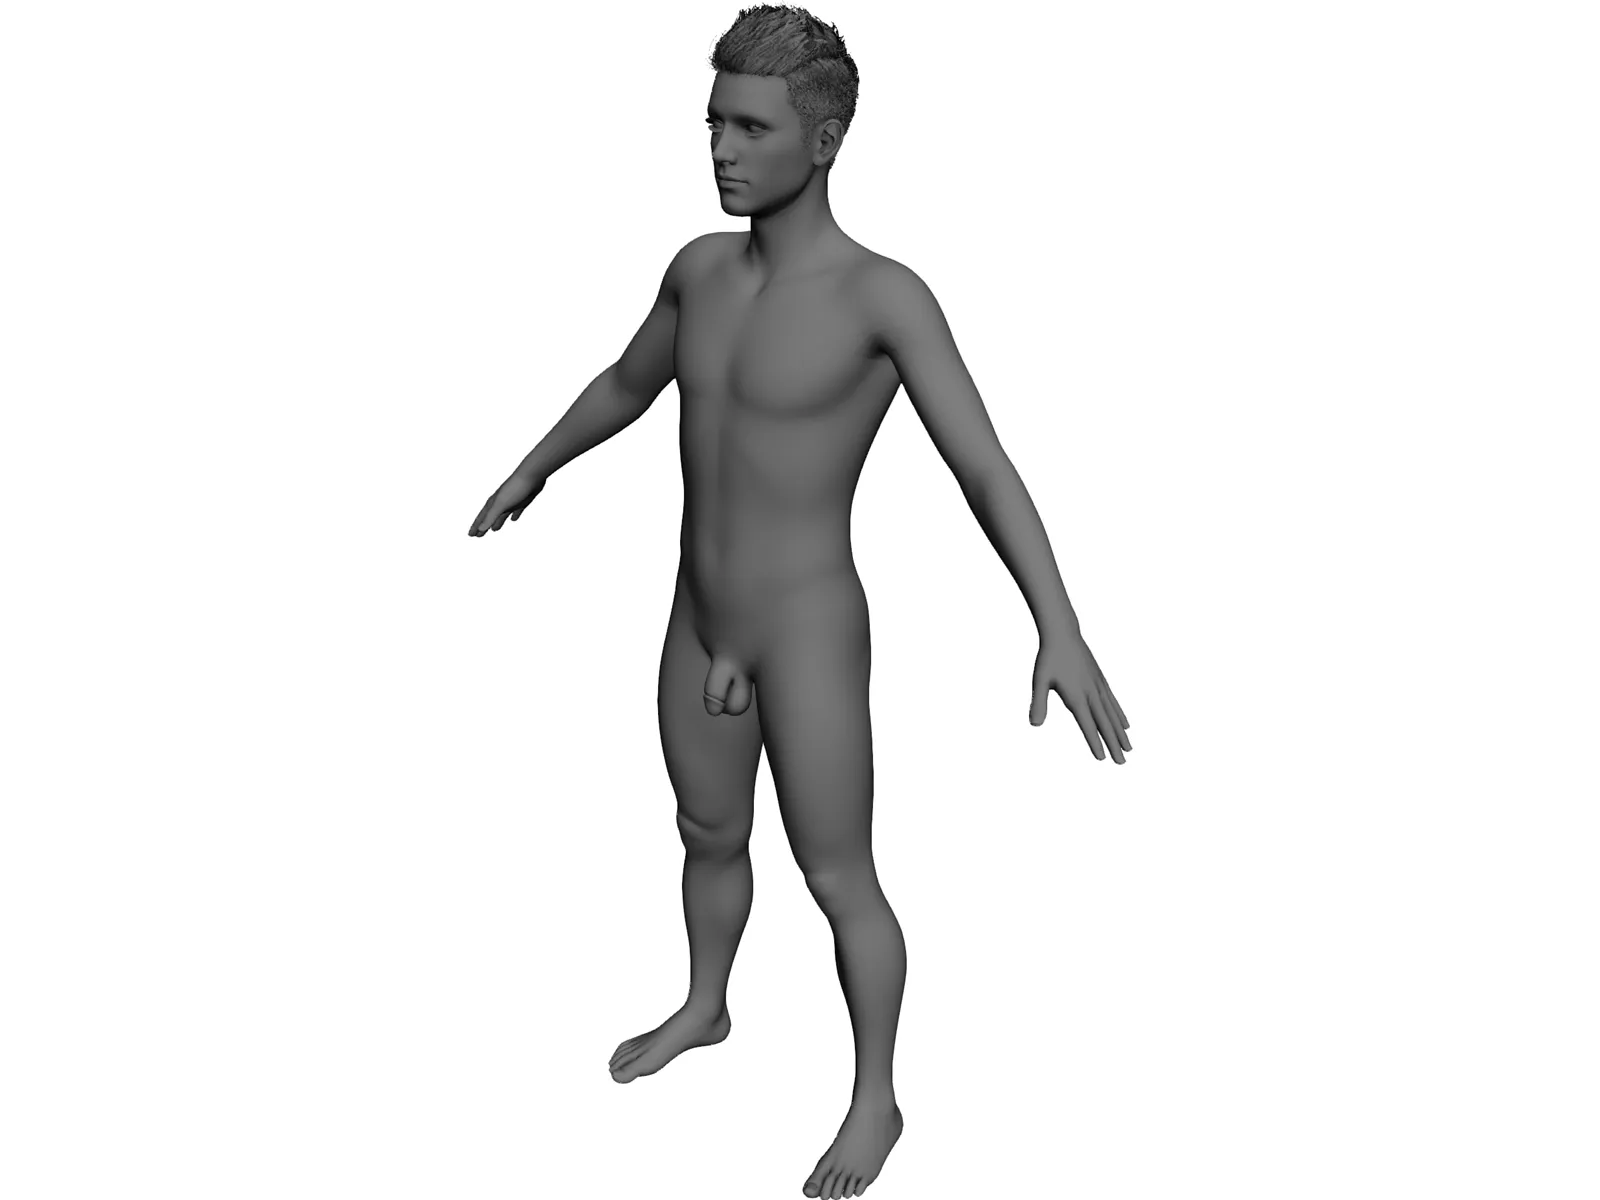 Male 3D Model